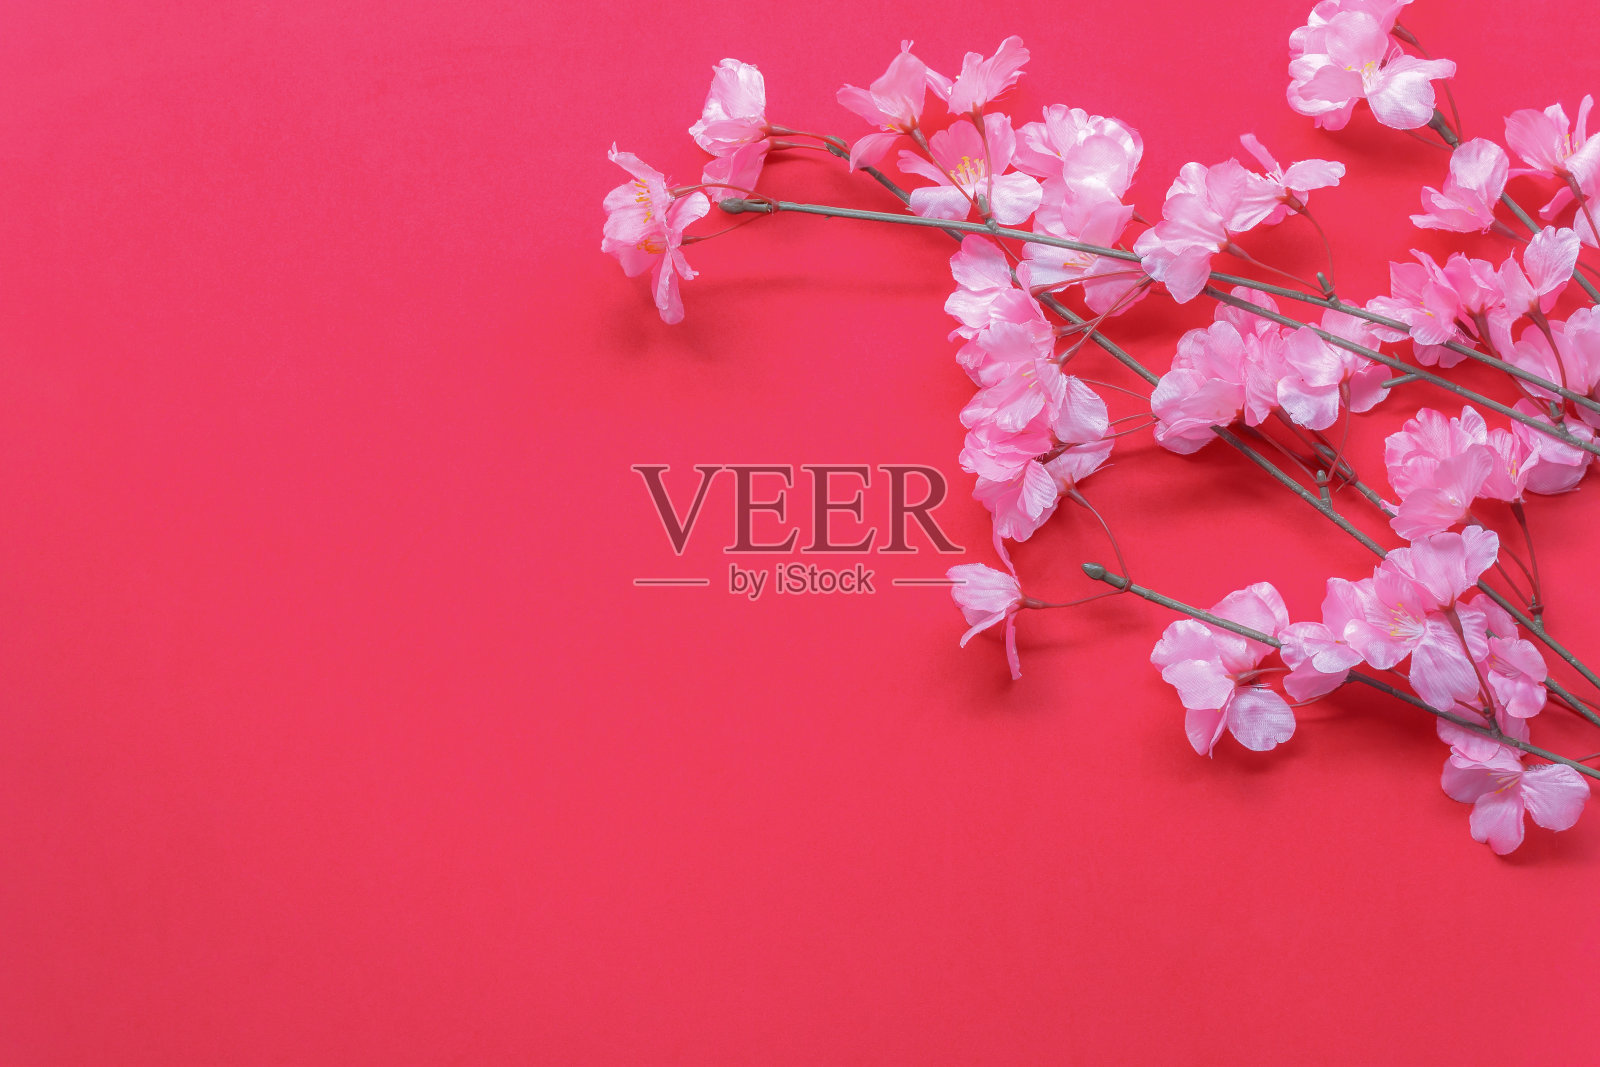 布置装饰中国新年和农历节日的概念背景。美丽的粉红色花在现代的红木墙纸在家庭办公桌上。自由空间的创意设计文本和措词。设计模板素材